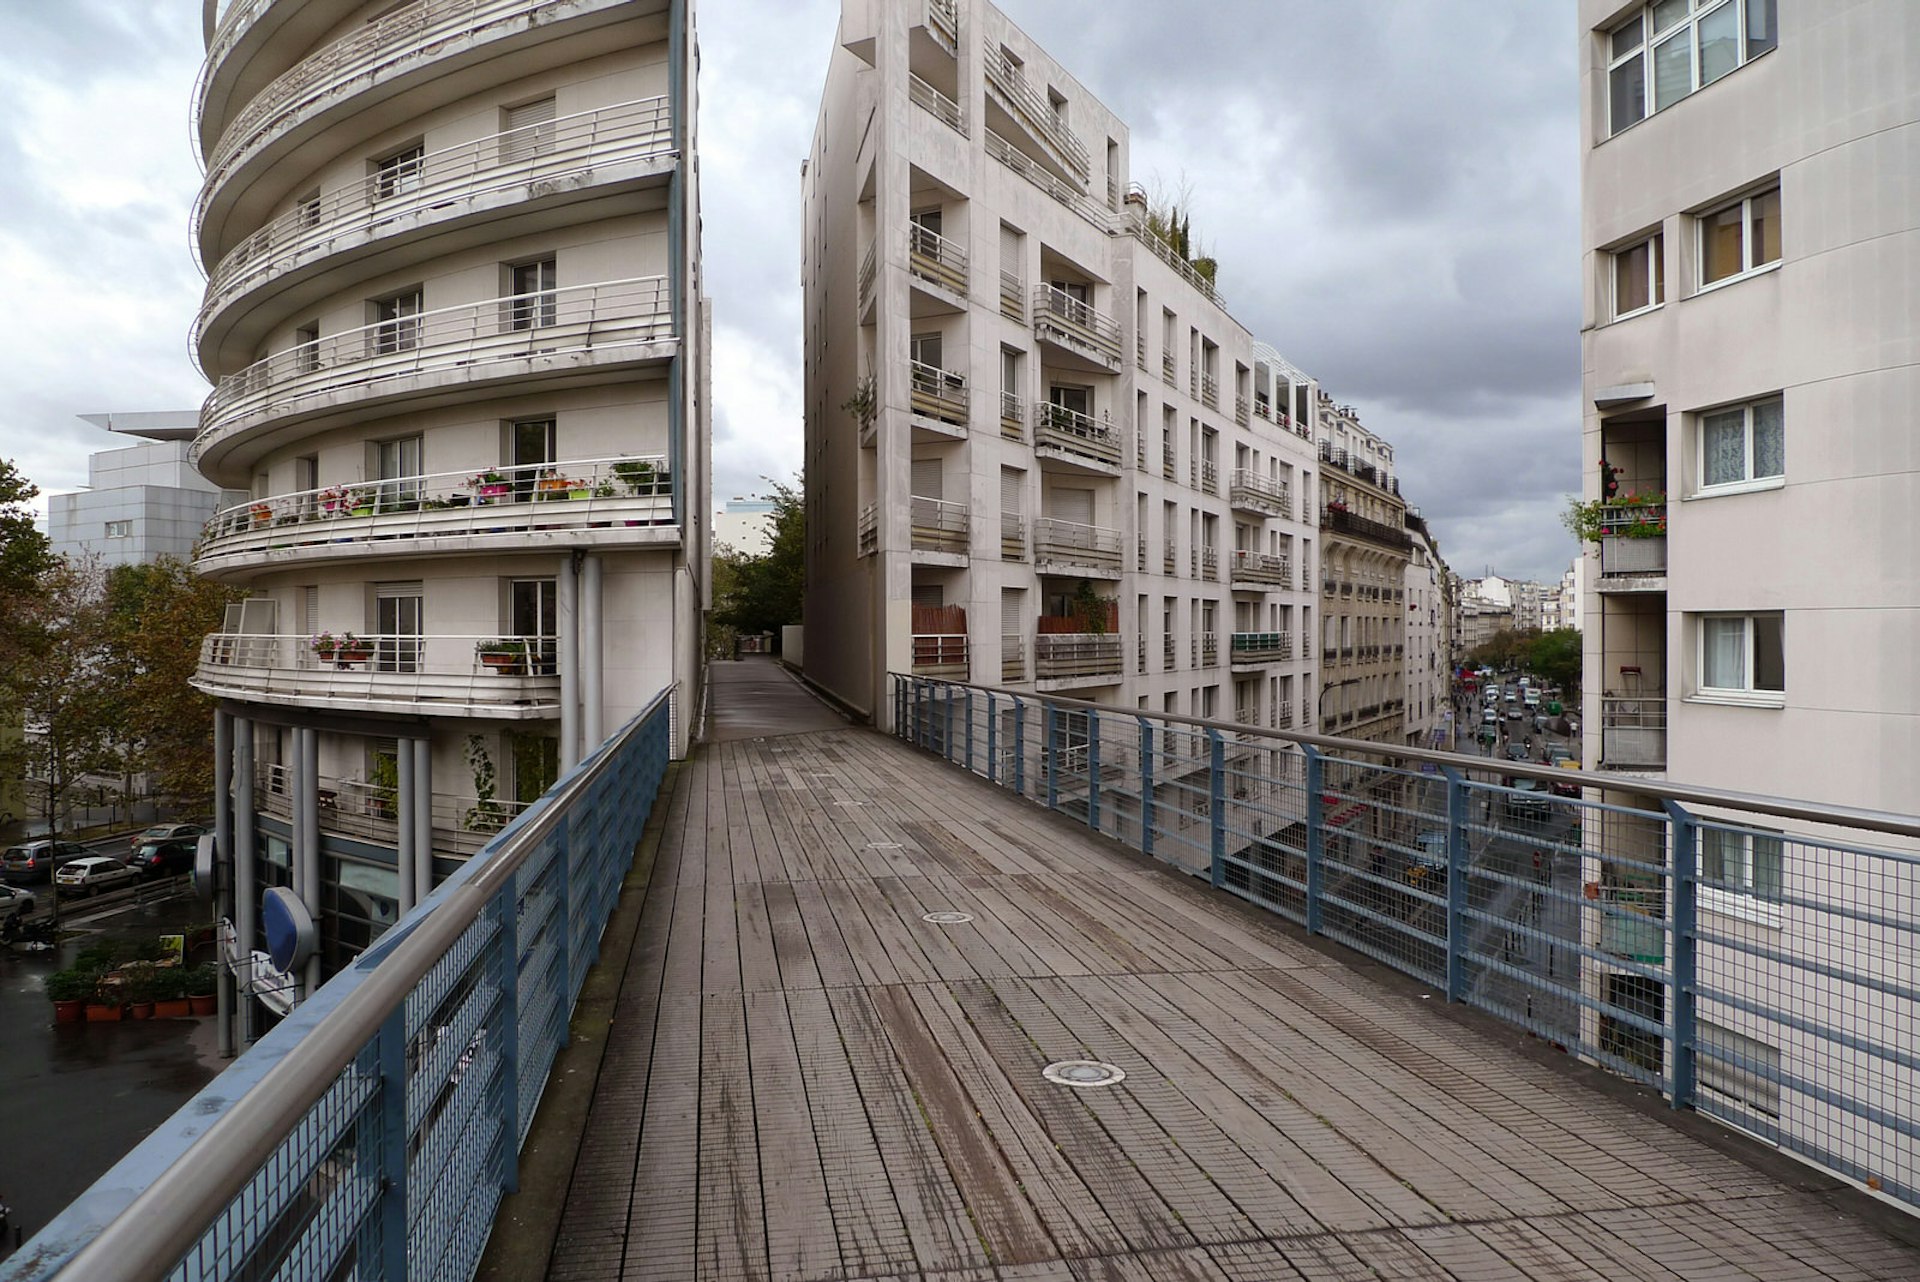 View of Promenade Plantée, a raised narrow wooden-floored walkway between two buildings in Paris, France 